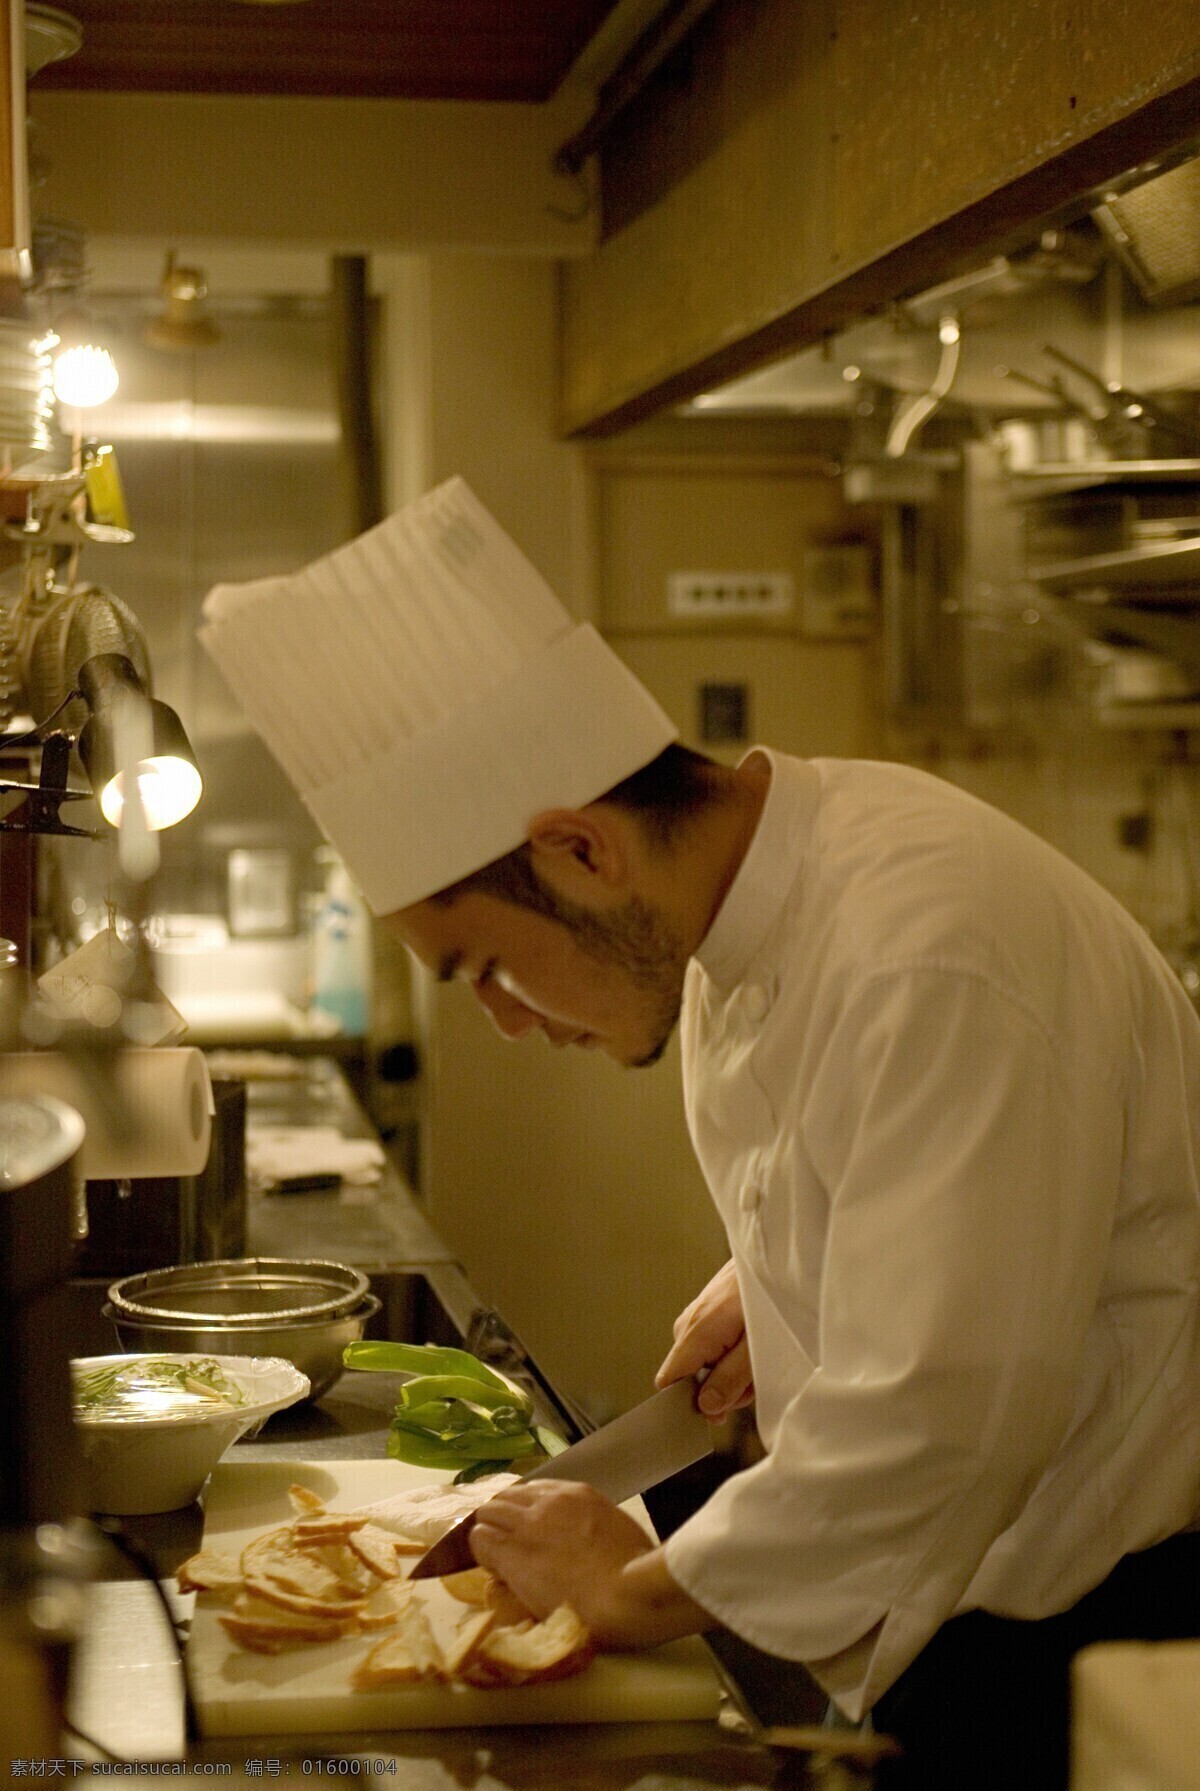 工作 中 面点 师傅 厨师 厨房 厨具 西点 日本料理 生活人物 人物图片